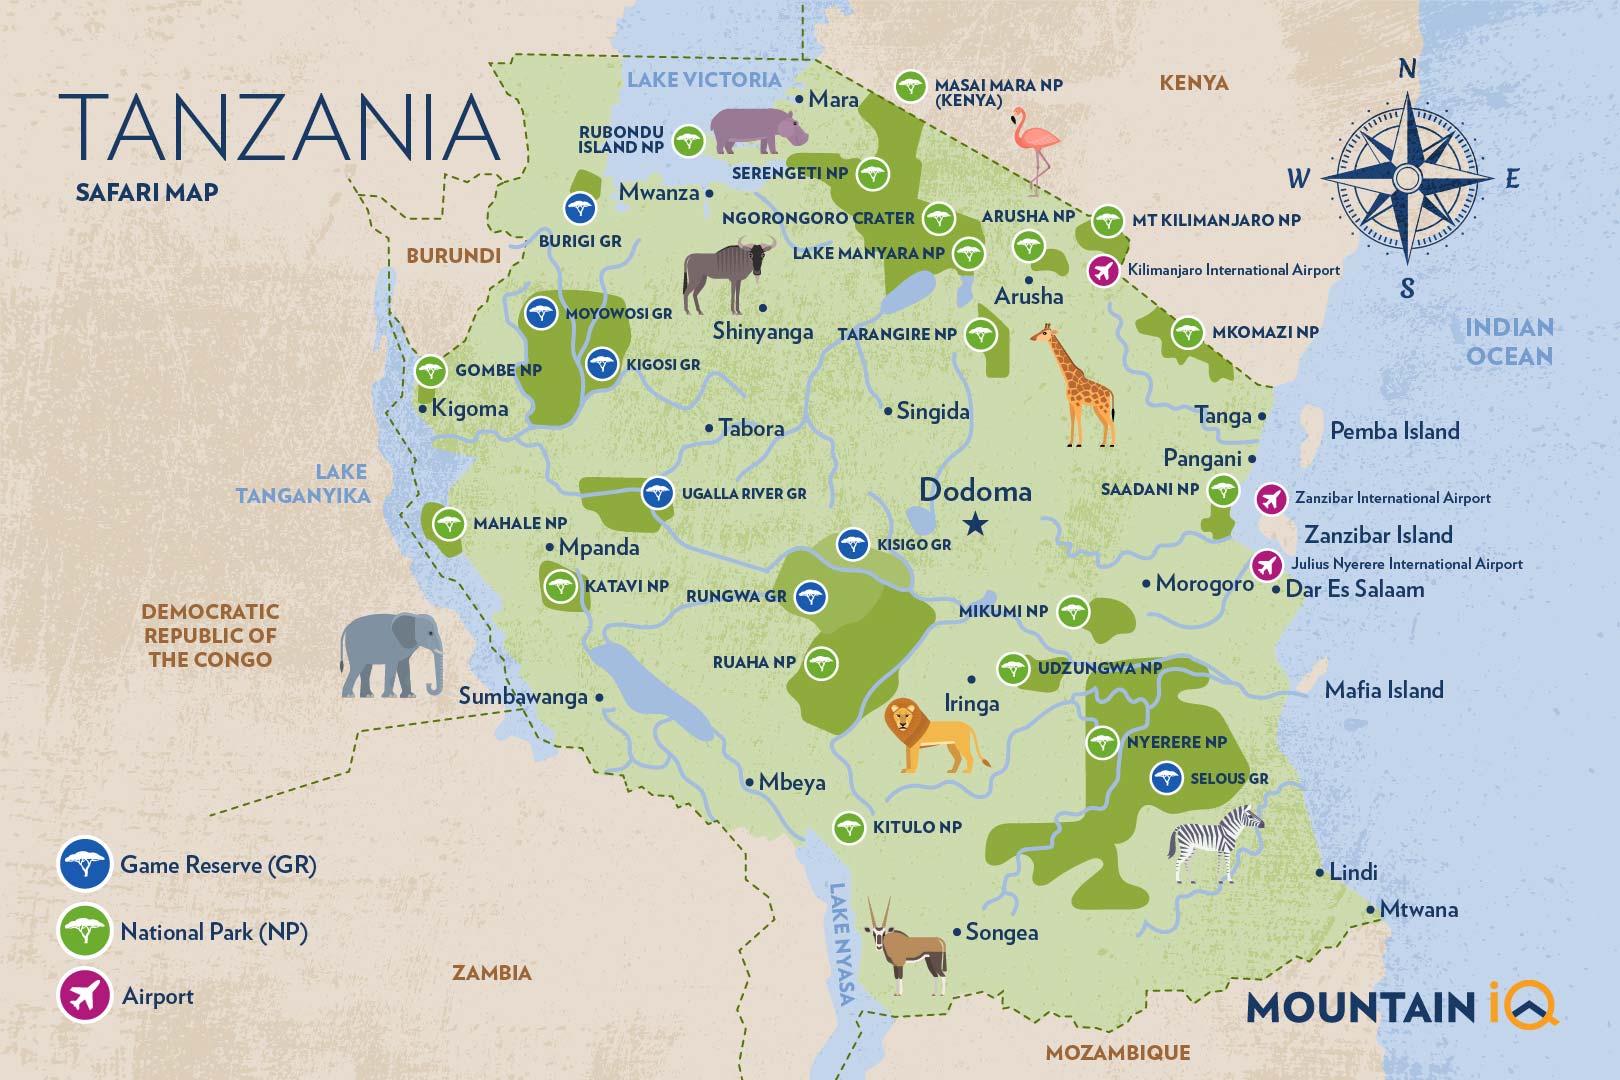 Tanzania Safari Map By Mountain IQ 1 